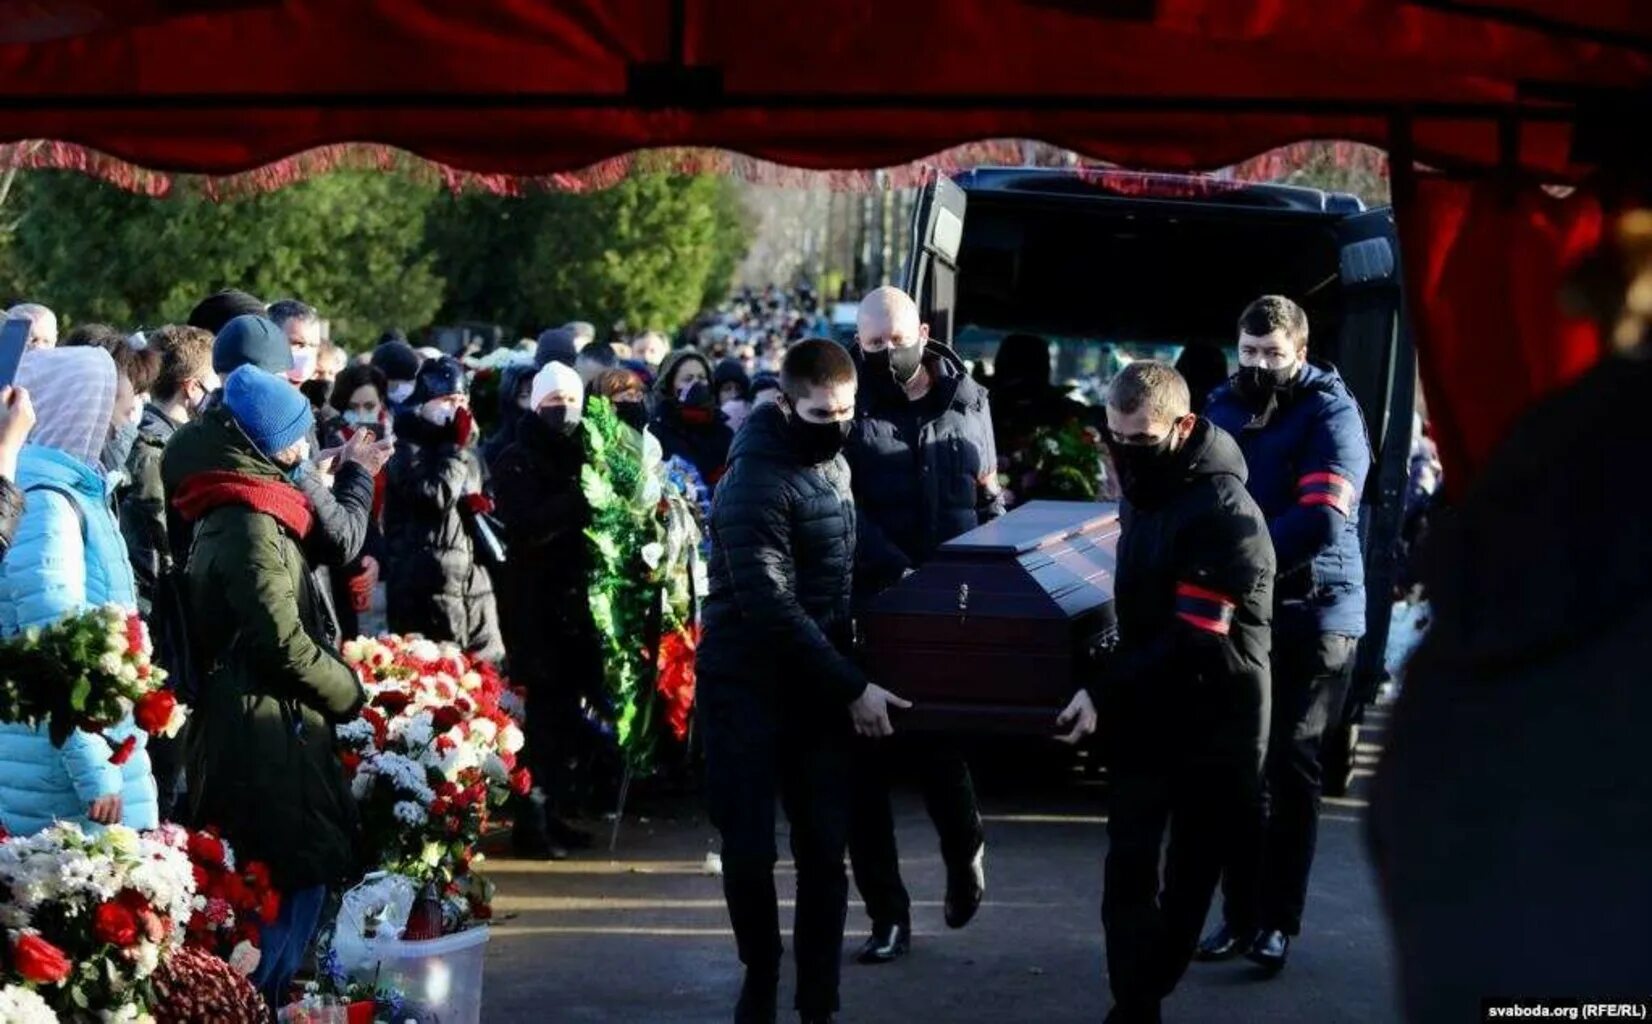 Похороны депутата Бондаренко. Похороны последний путь.